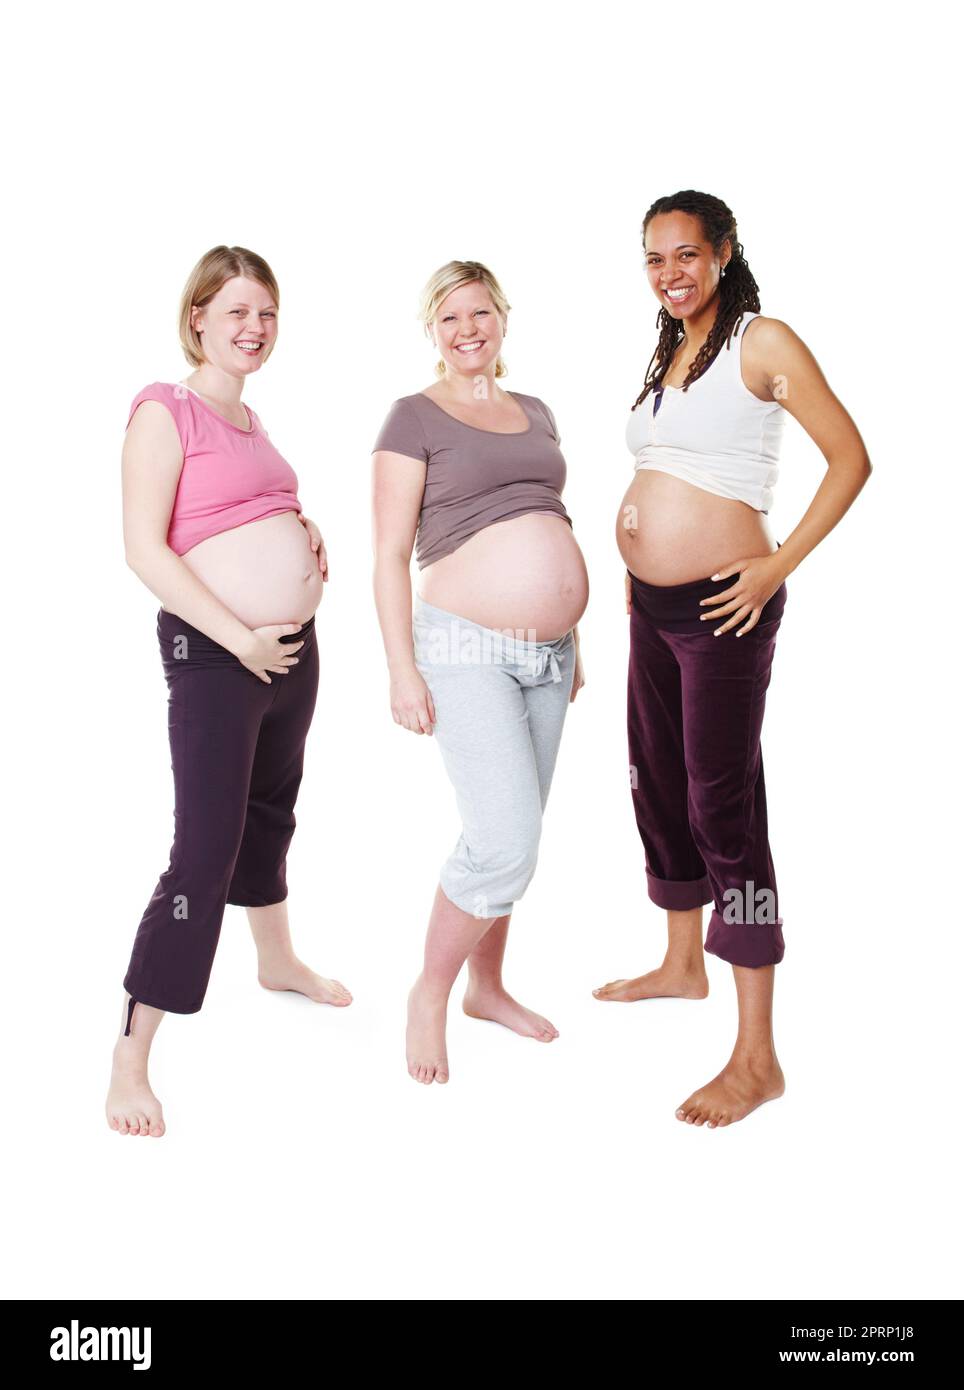 Porträt einer glücklichen Schwangerschaft, Frau und Freunden in einem Gruppenfoto mit weißem Studiohintergrund. Weibliche Menschen in Vielfalt lächeln mit Babybeulen oder Bauch, die glücklich sind, eine Mutter im Modell zu sein. Stockfoto